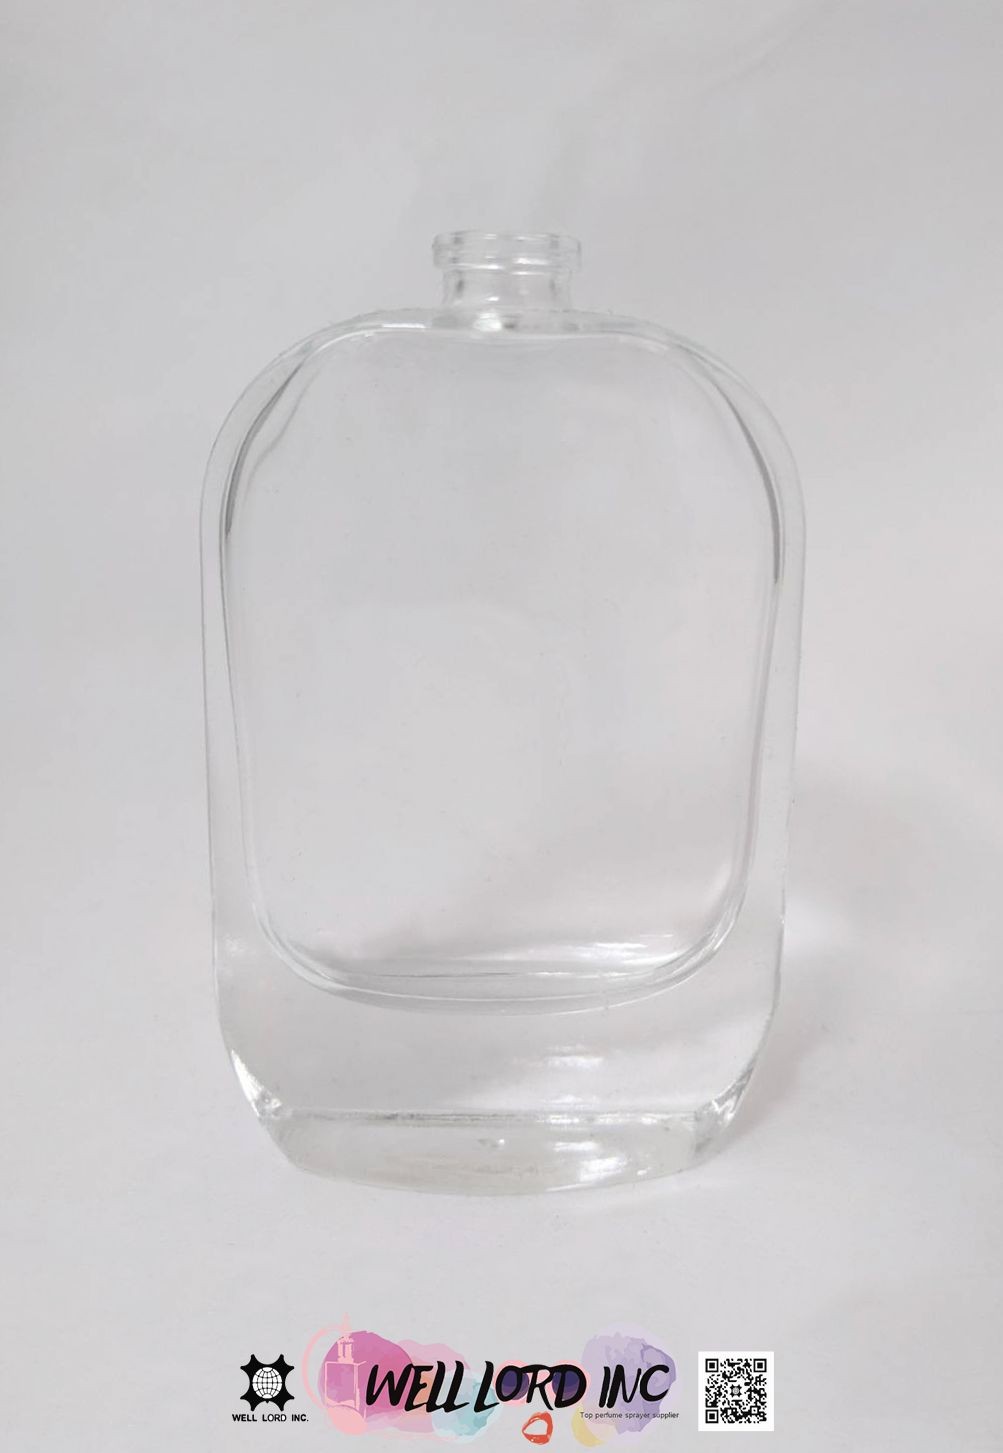 椭圆扁瓶封口式香水玻璃空瓶